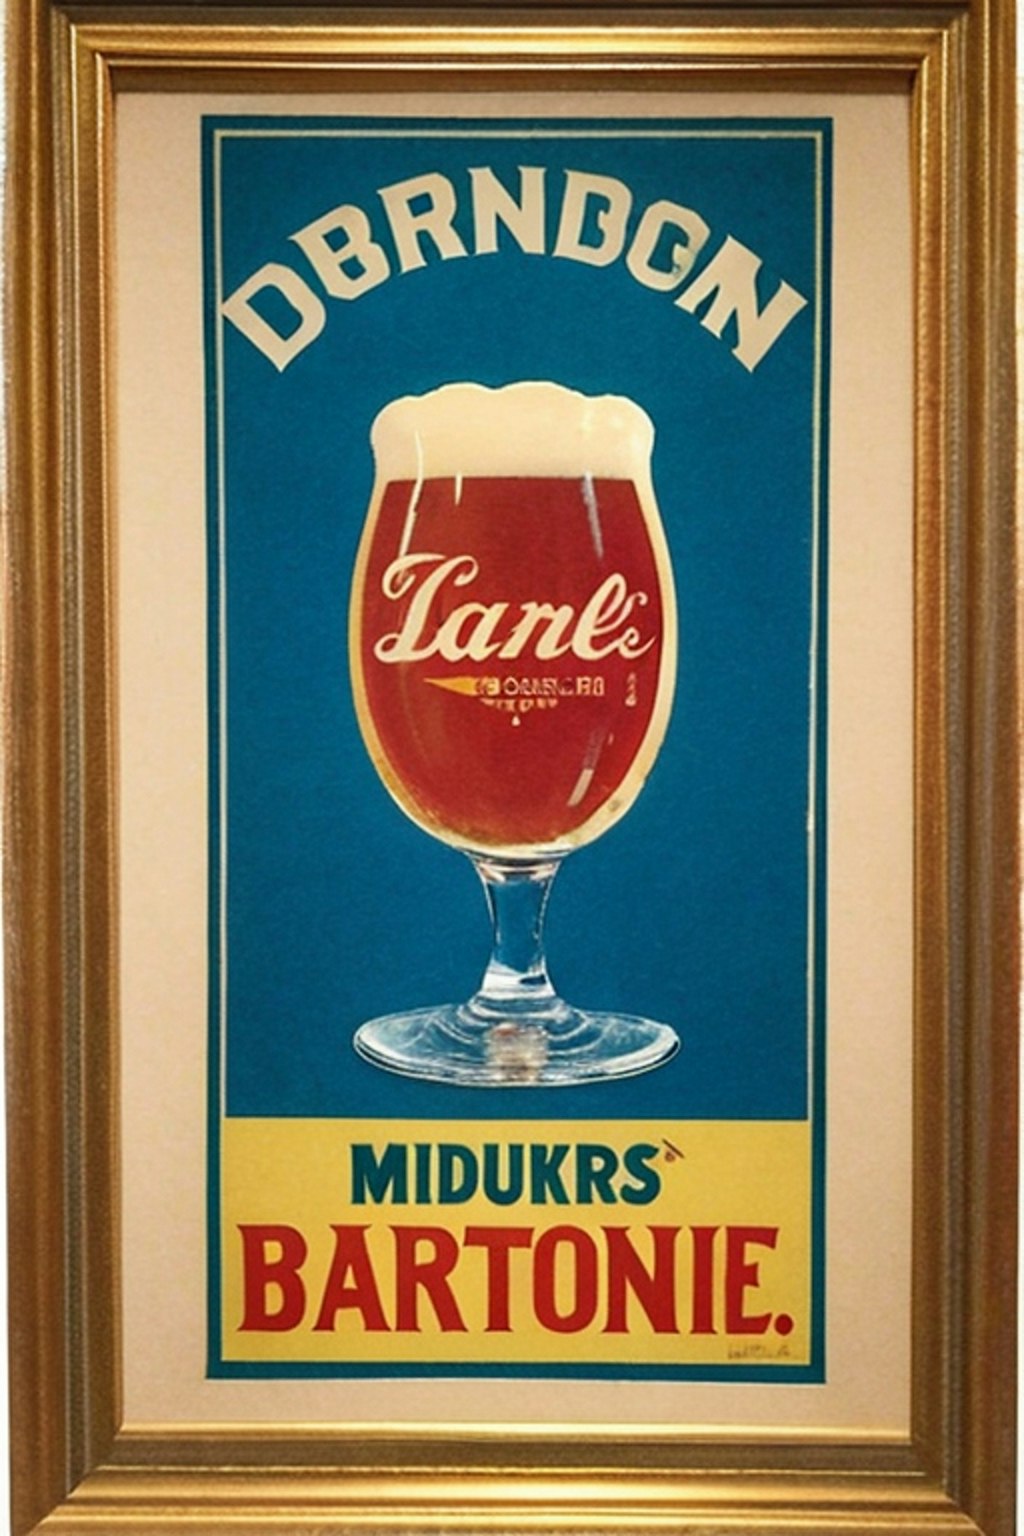 1920年代のビールの広告